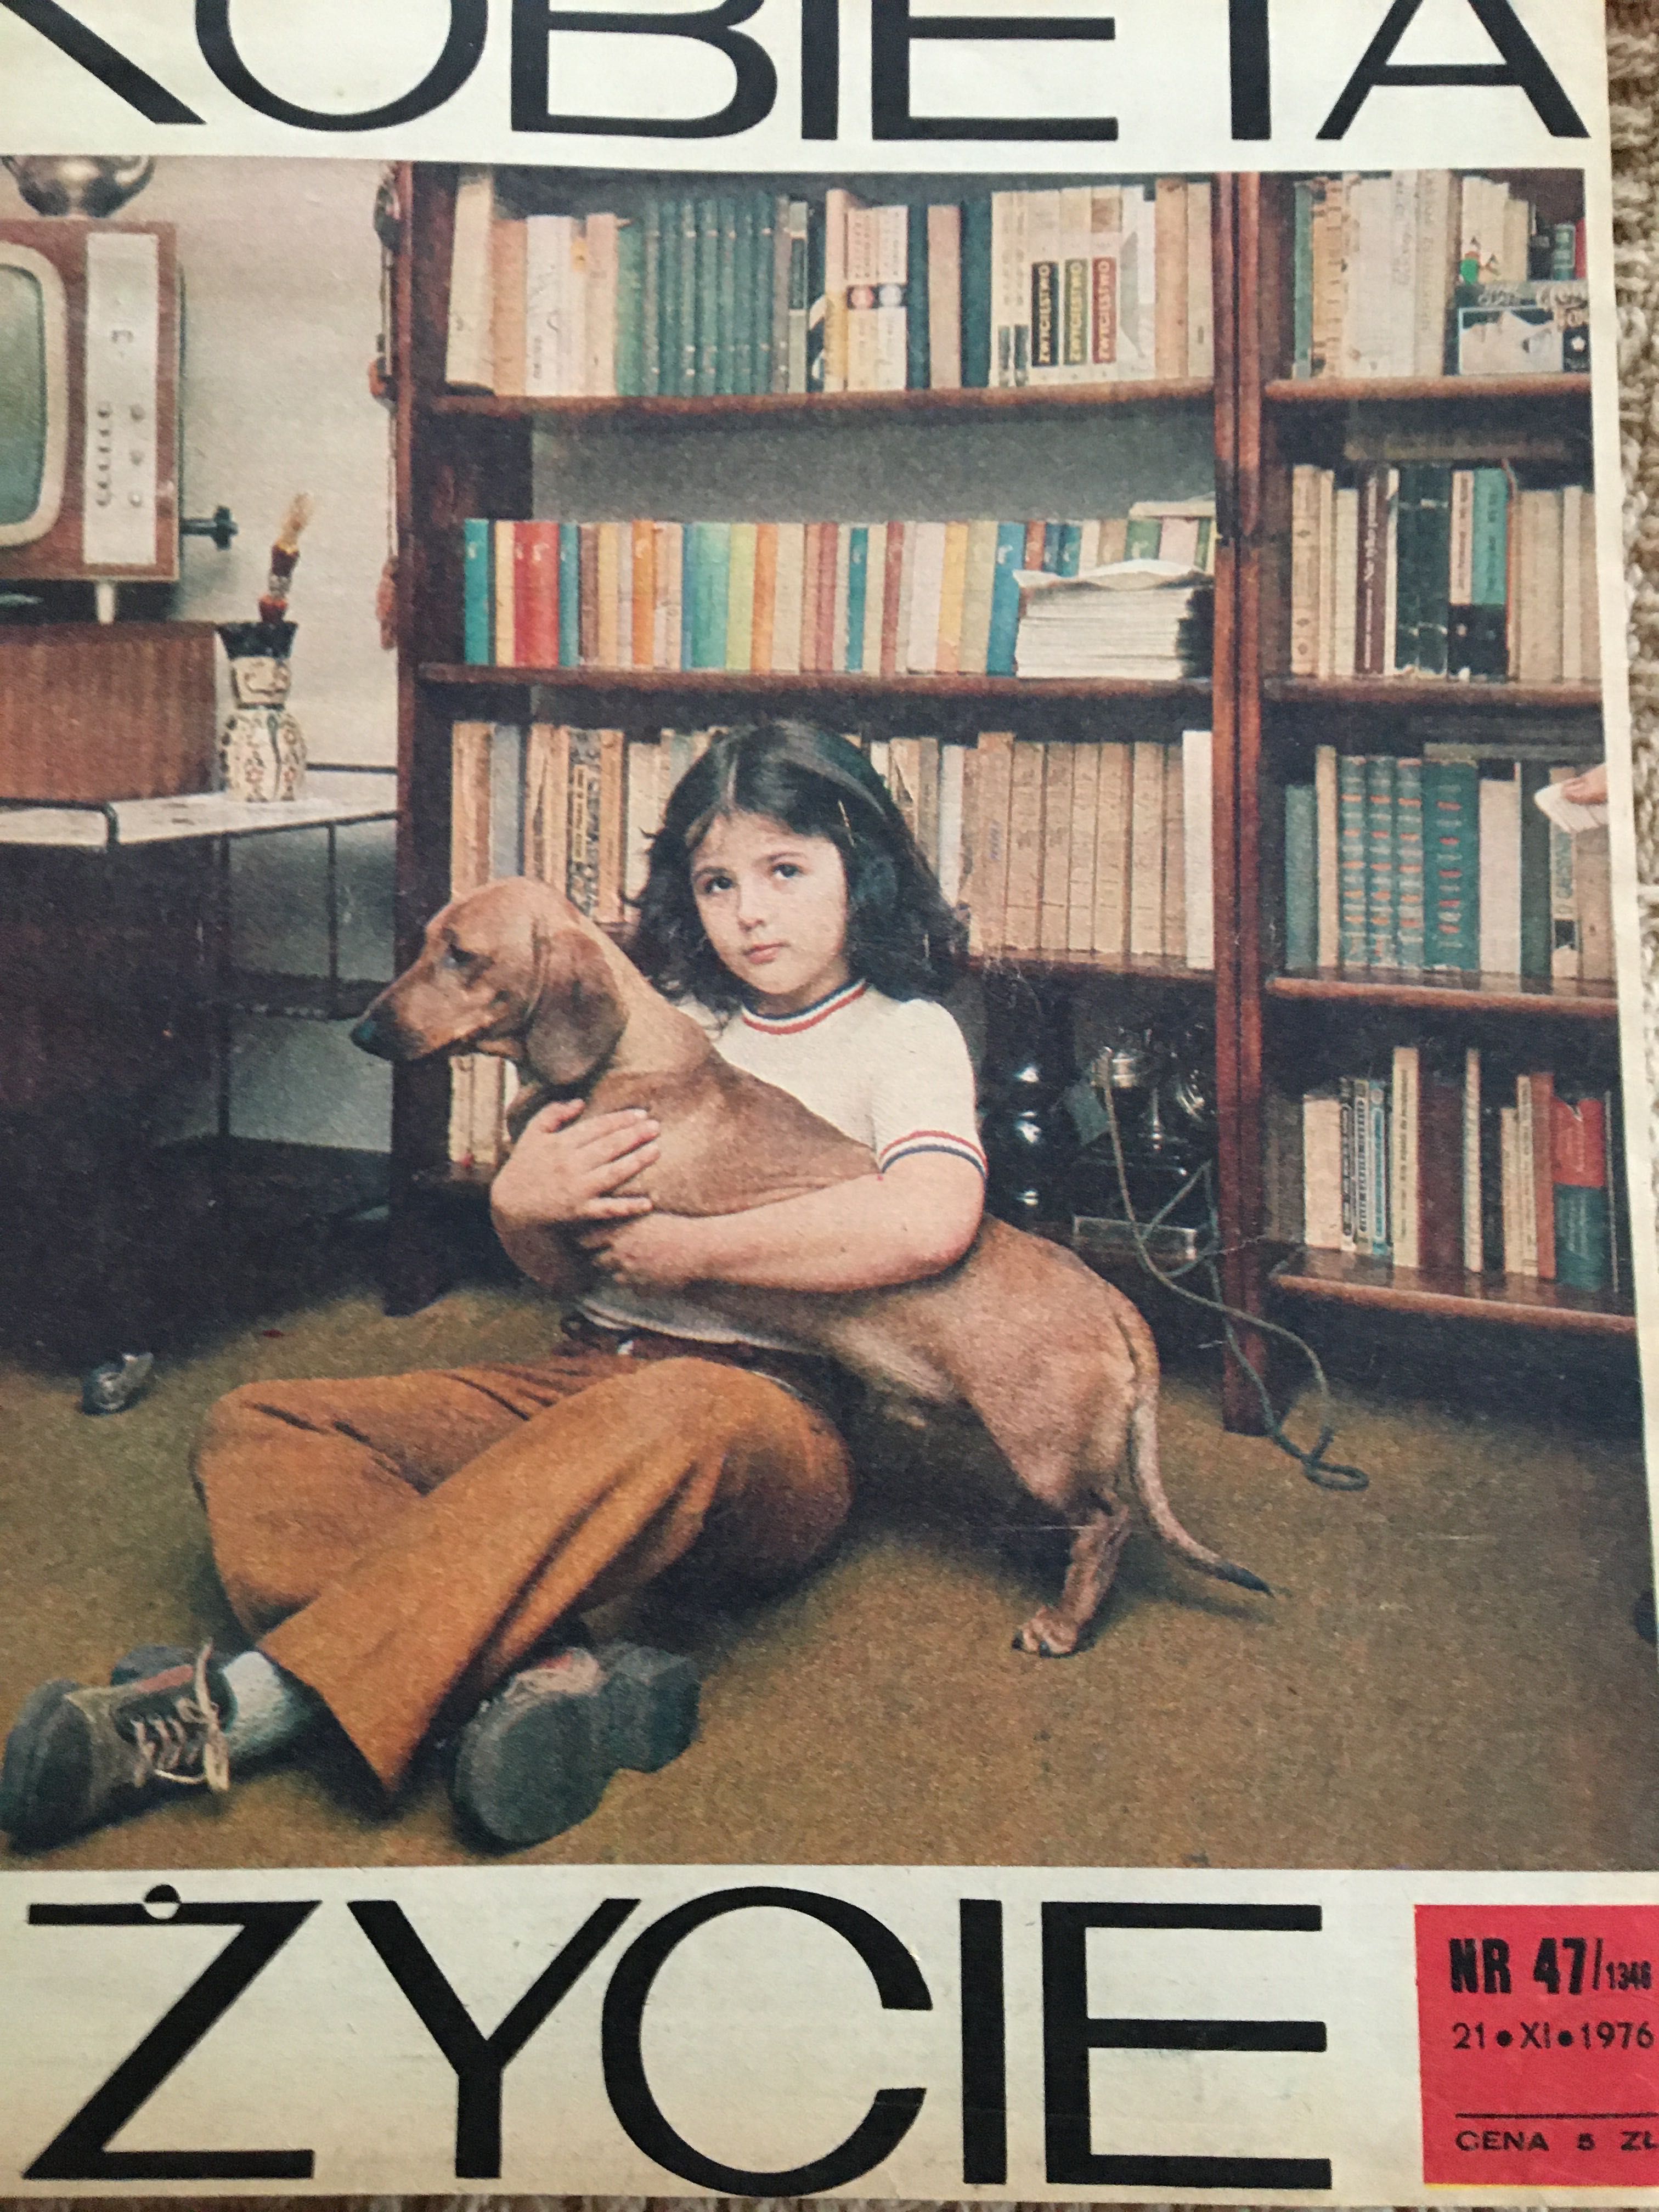 Kobieta i Życie, 1976/77, numery od 21.11.1976 do 05.06.1977 r